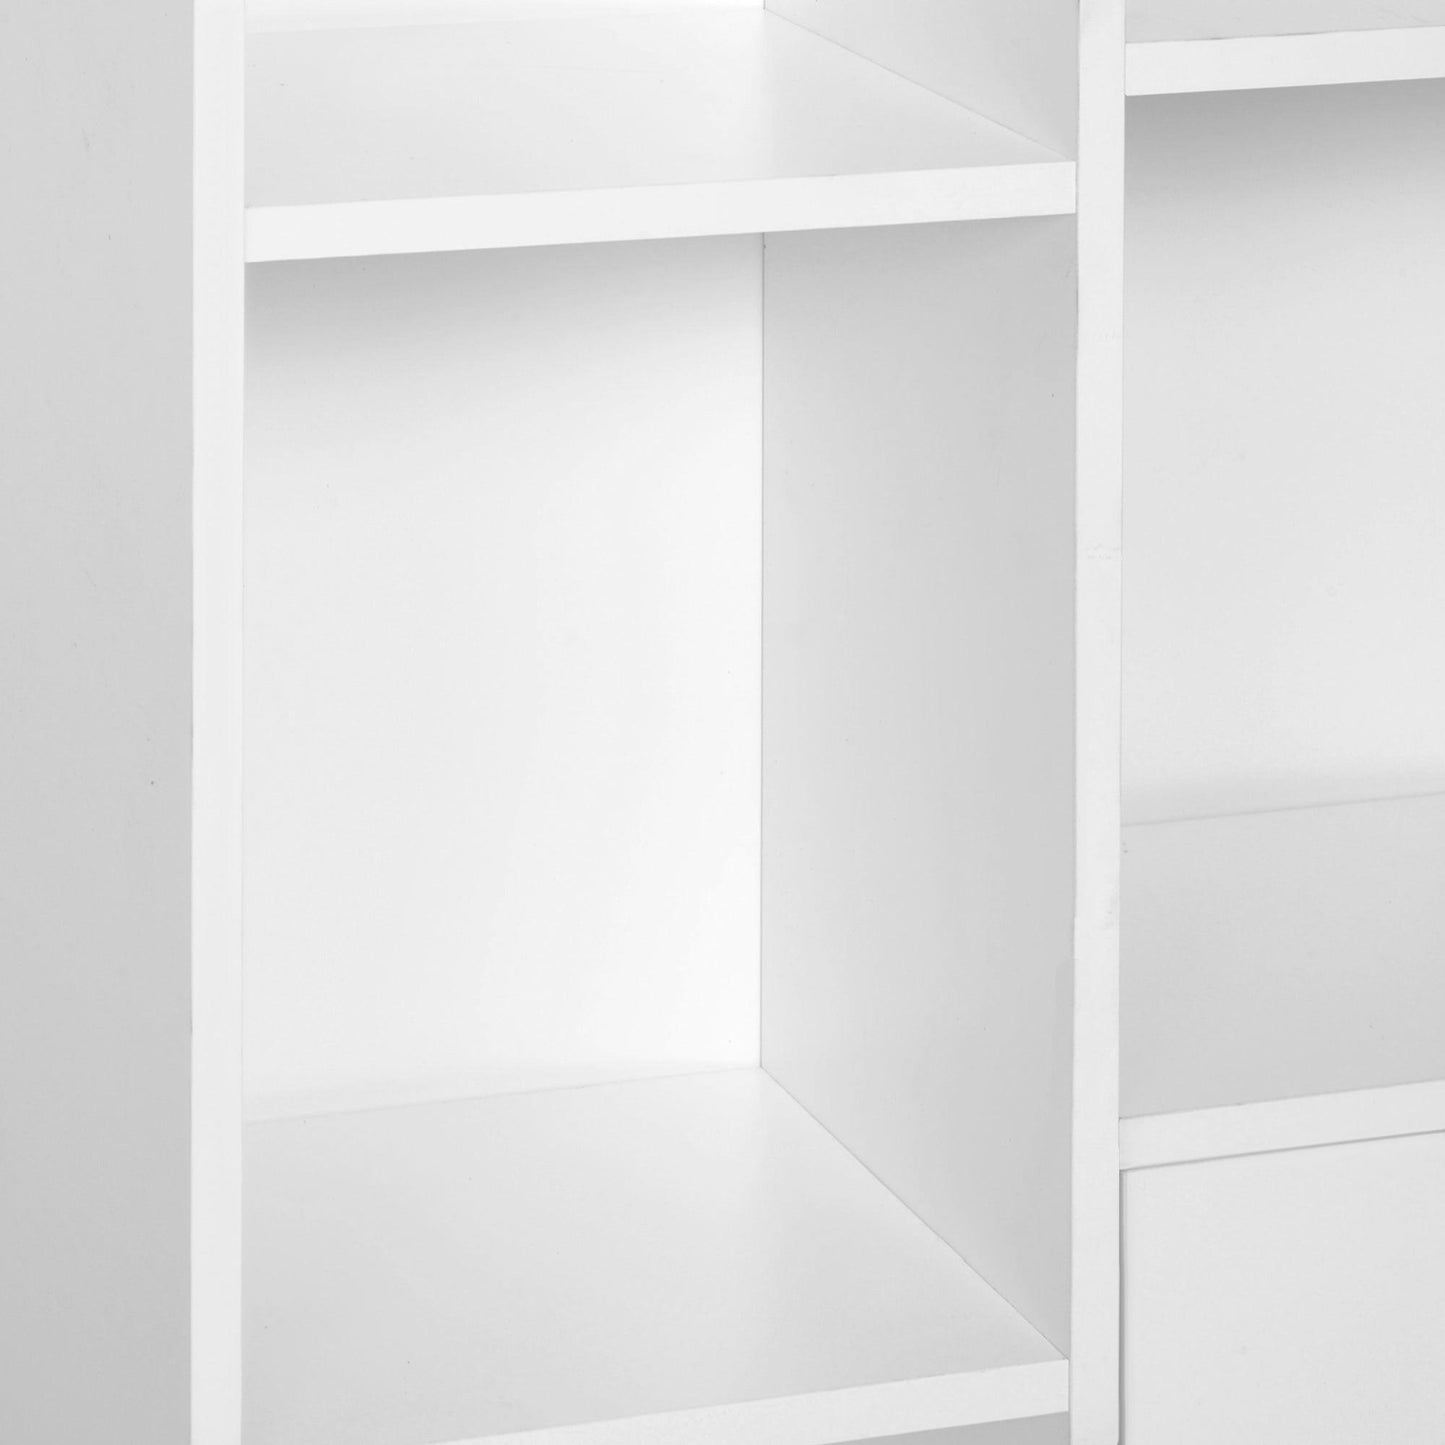 HOMCOM White Wooden Bookcase Cabinet - Sleek Stand - ALL4U RETAILER LTD